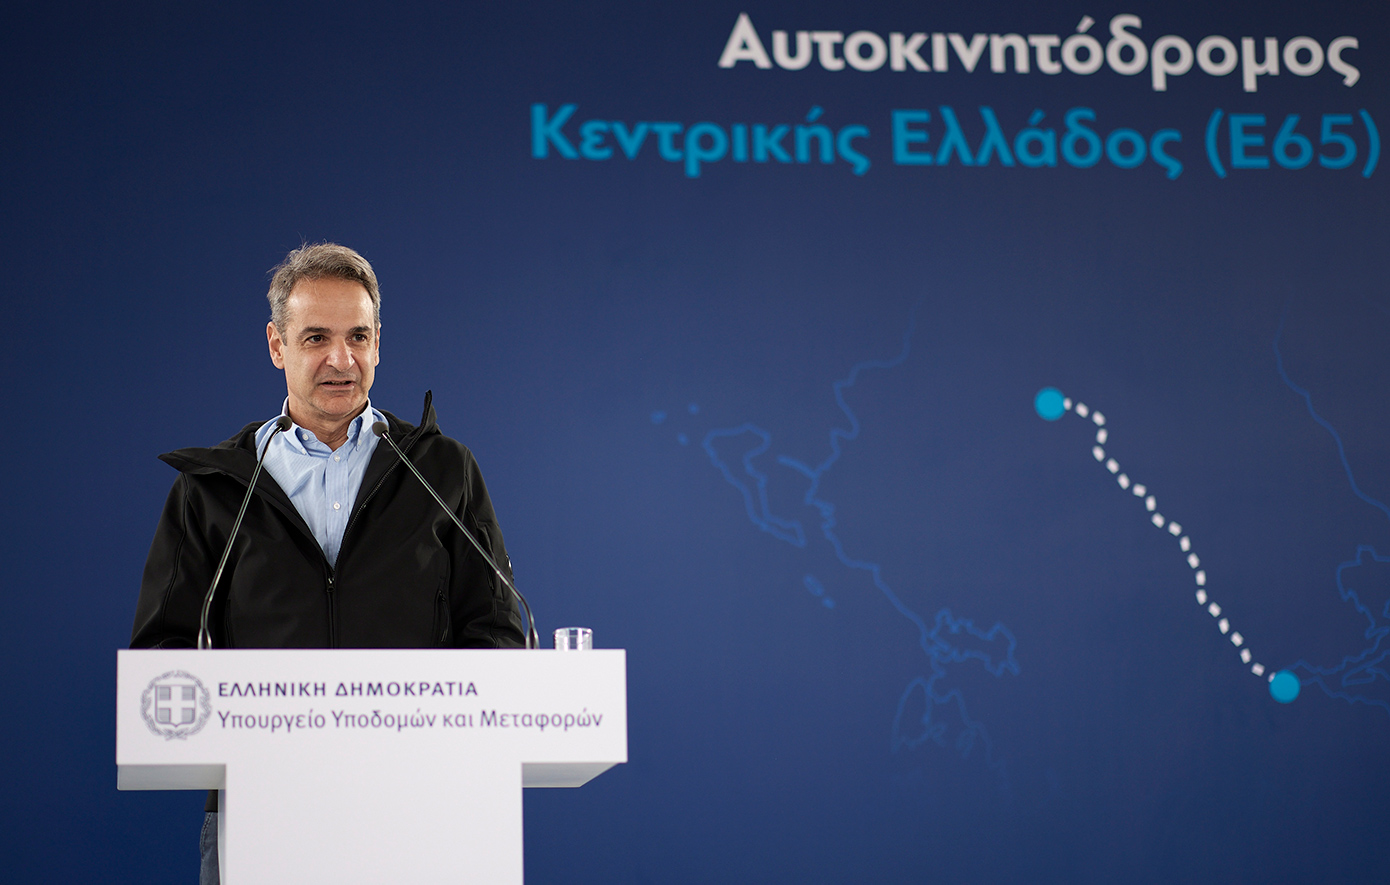 Μητσοτάκης για τον αυτοκινητόδρομο Ε65 Λαμία-Καλαμπάκα: Η ΝΔ αγωνίζεται η Ελλάδα να γίνει Ευρώπη σε όλα τα επίπεδα